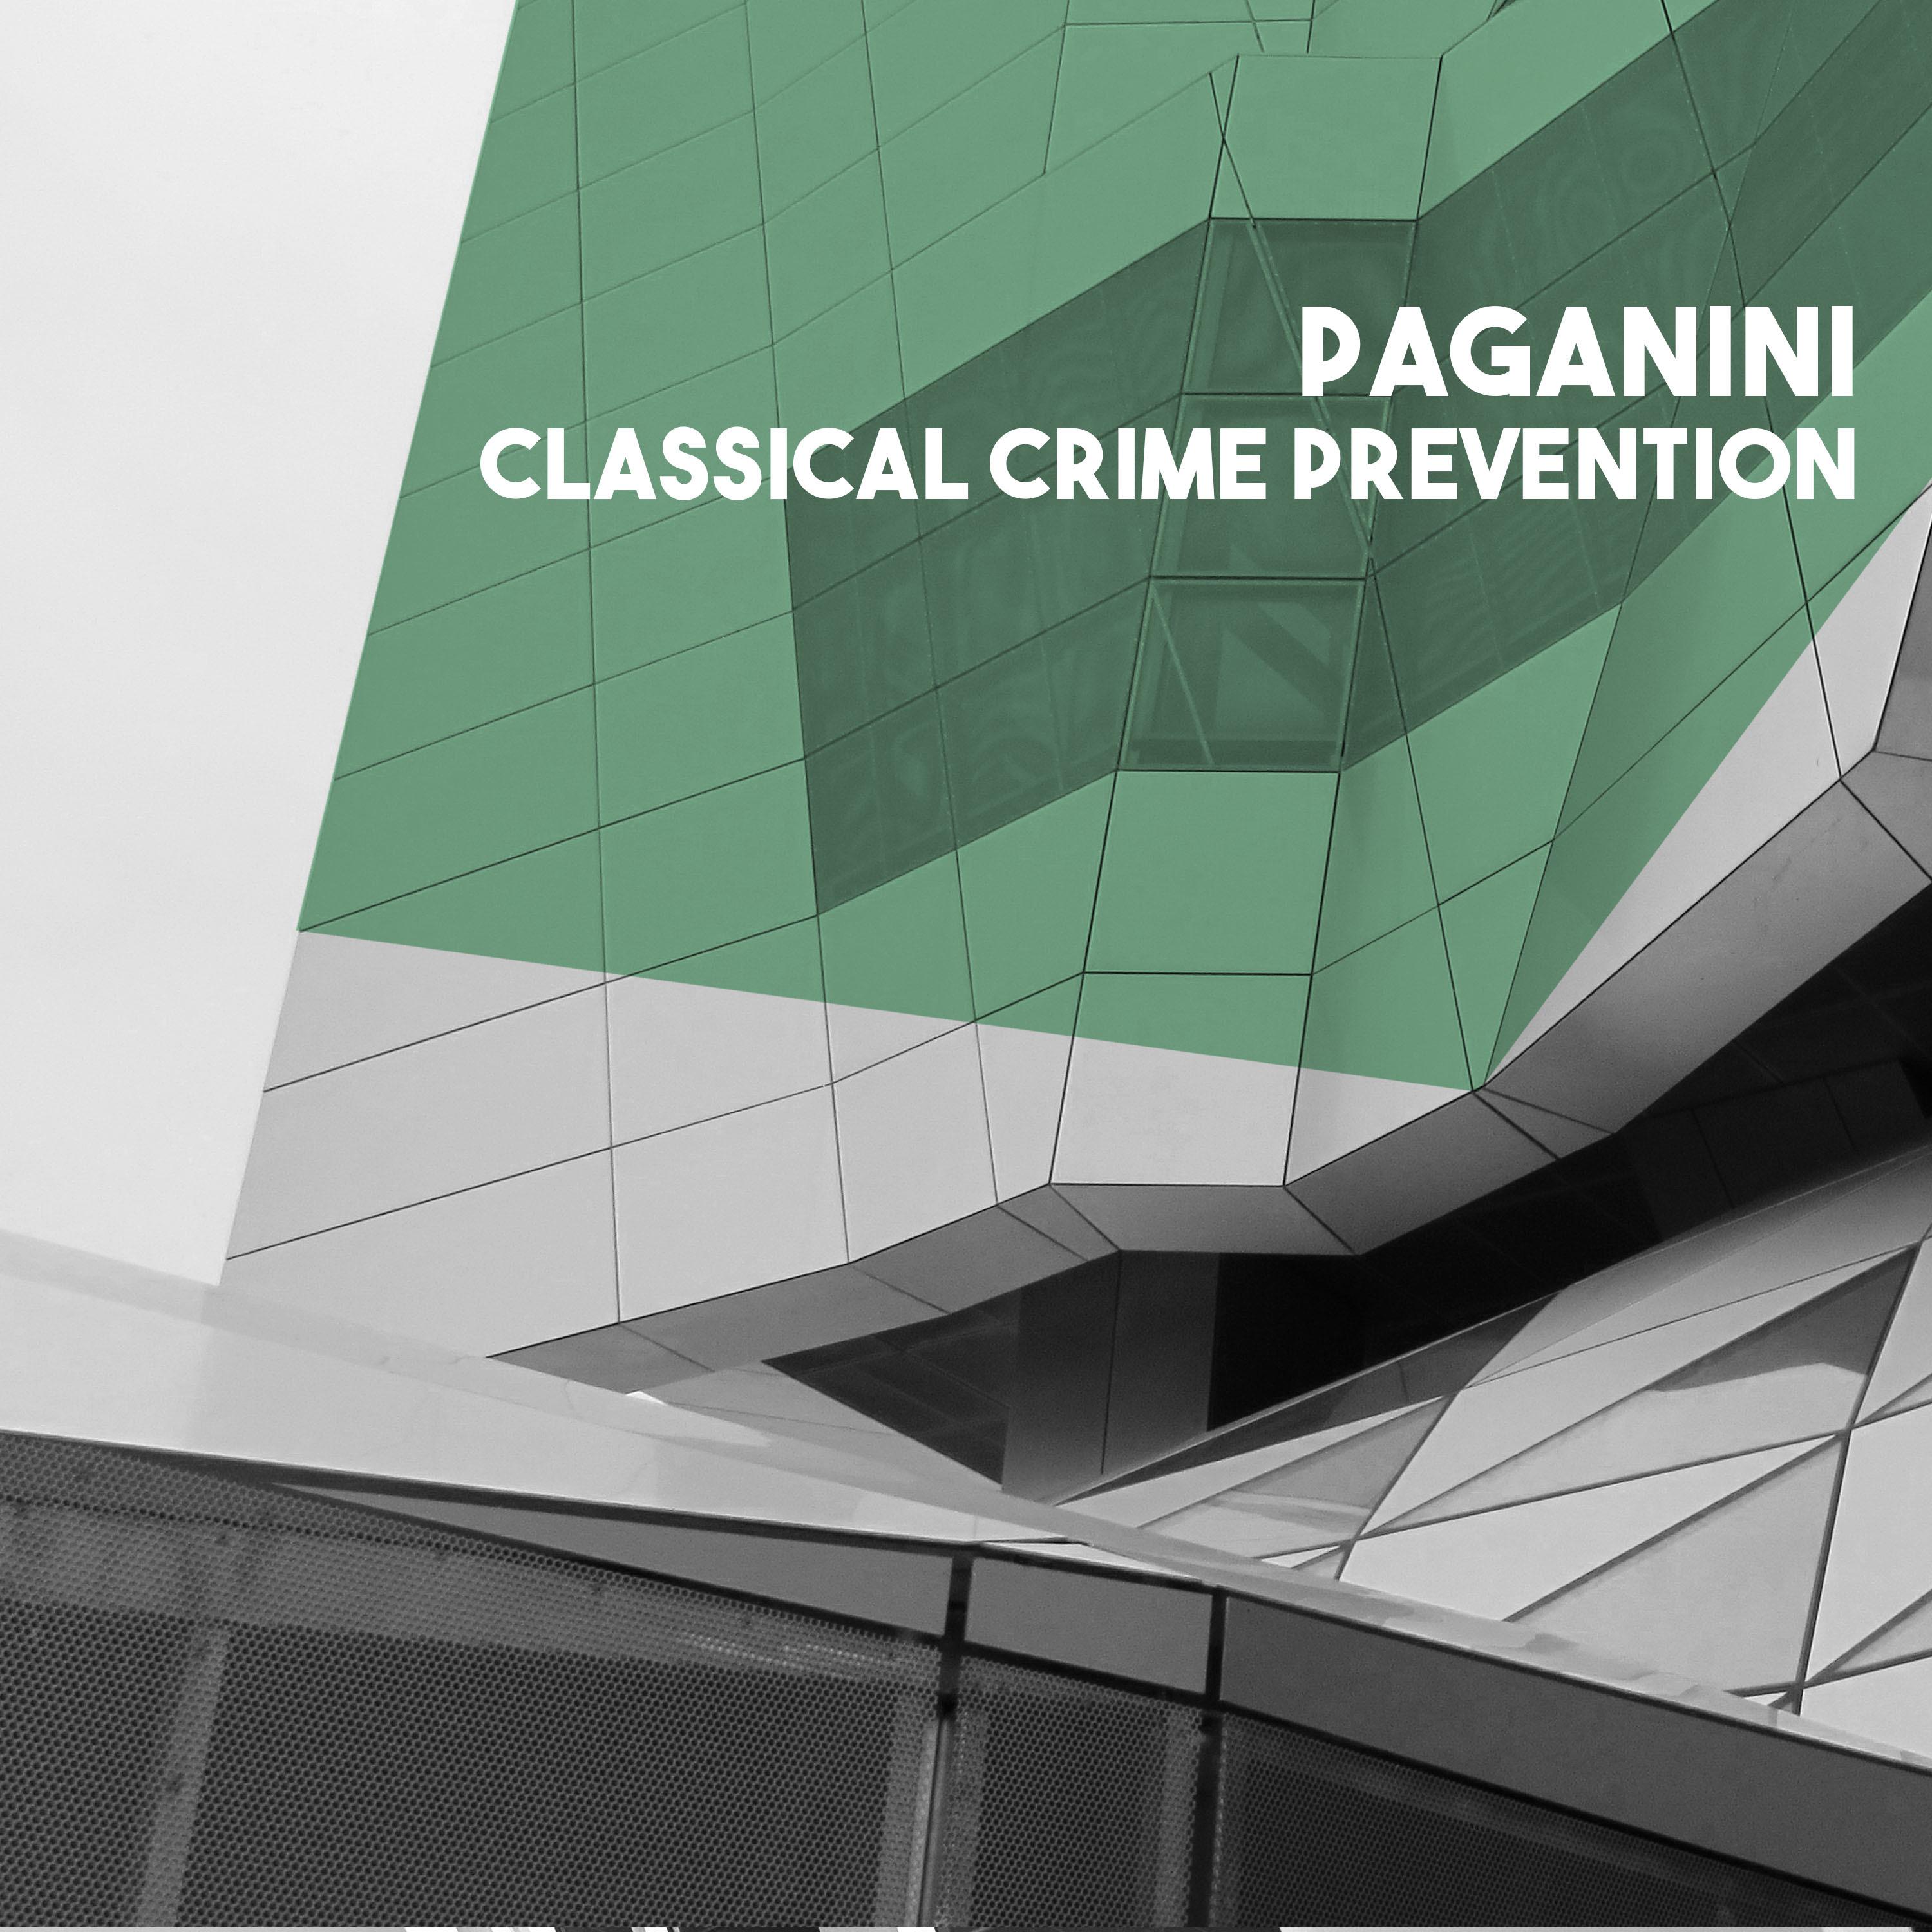 Paganini: Classical Crime Prevention